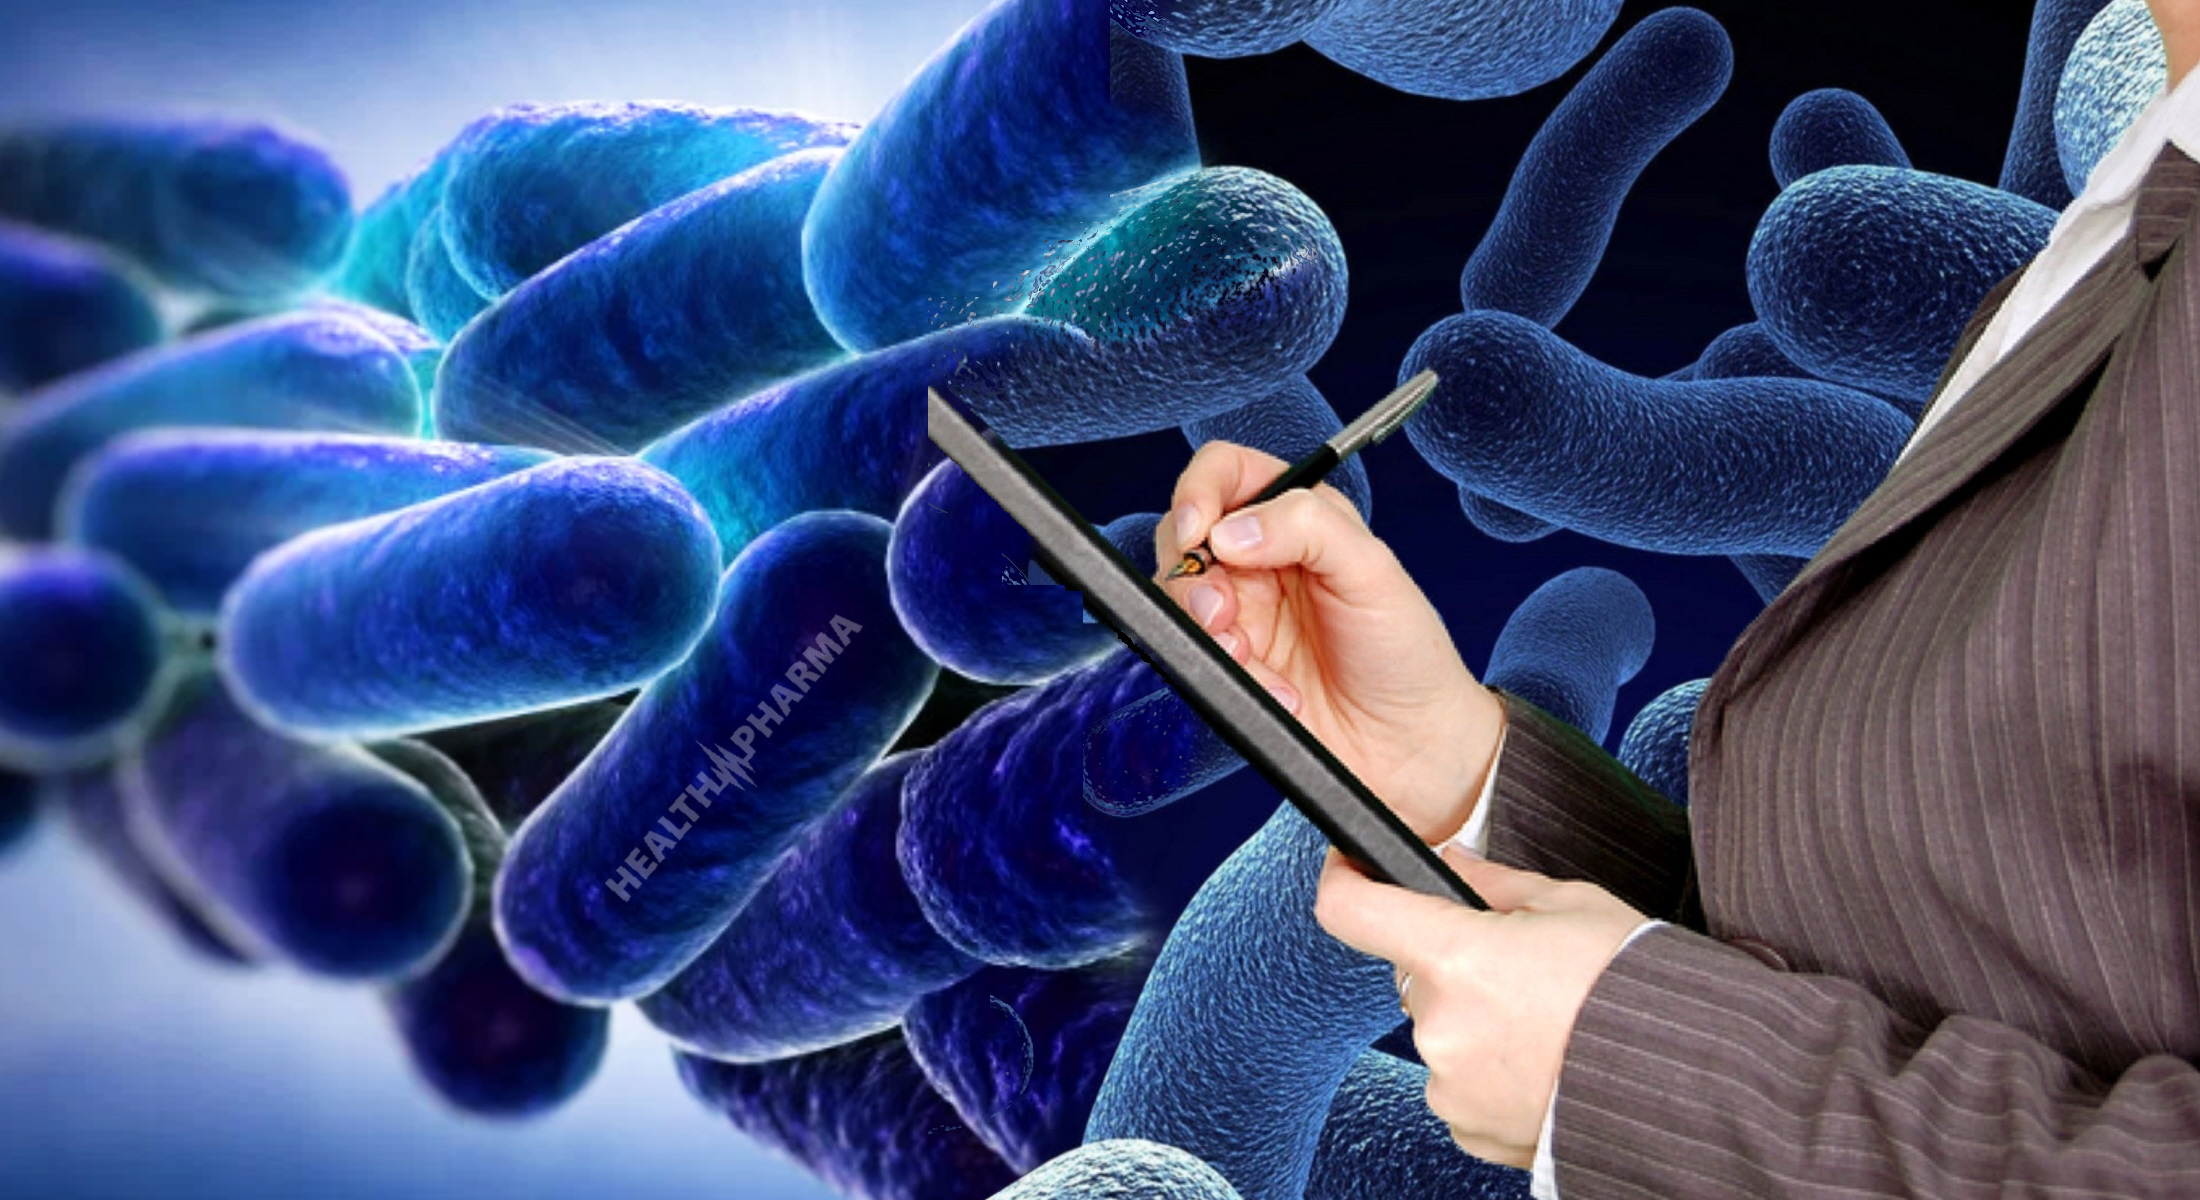 Μικρόβια βακτήρια σχήμα: Ο μηχανιστικός τρόπος προσαρμογής και η στρατηγική ανατροφοδότησης